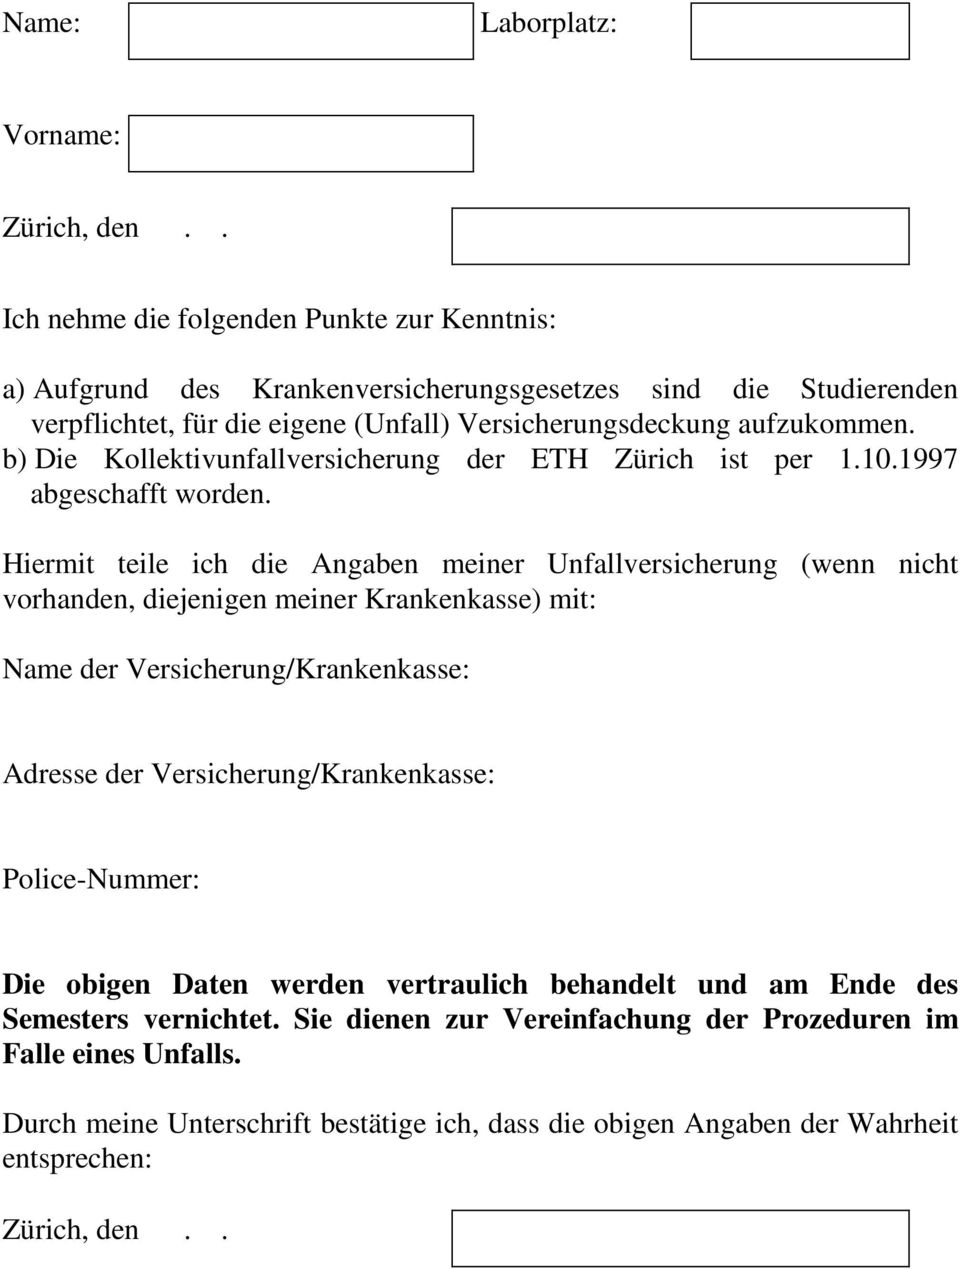 b) Die Kollektivunfallversicherung der ETH Zürich ist per 1.10.1997 abgeschafft worden.